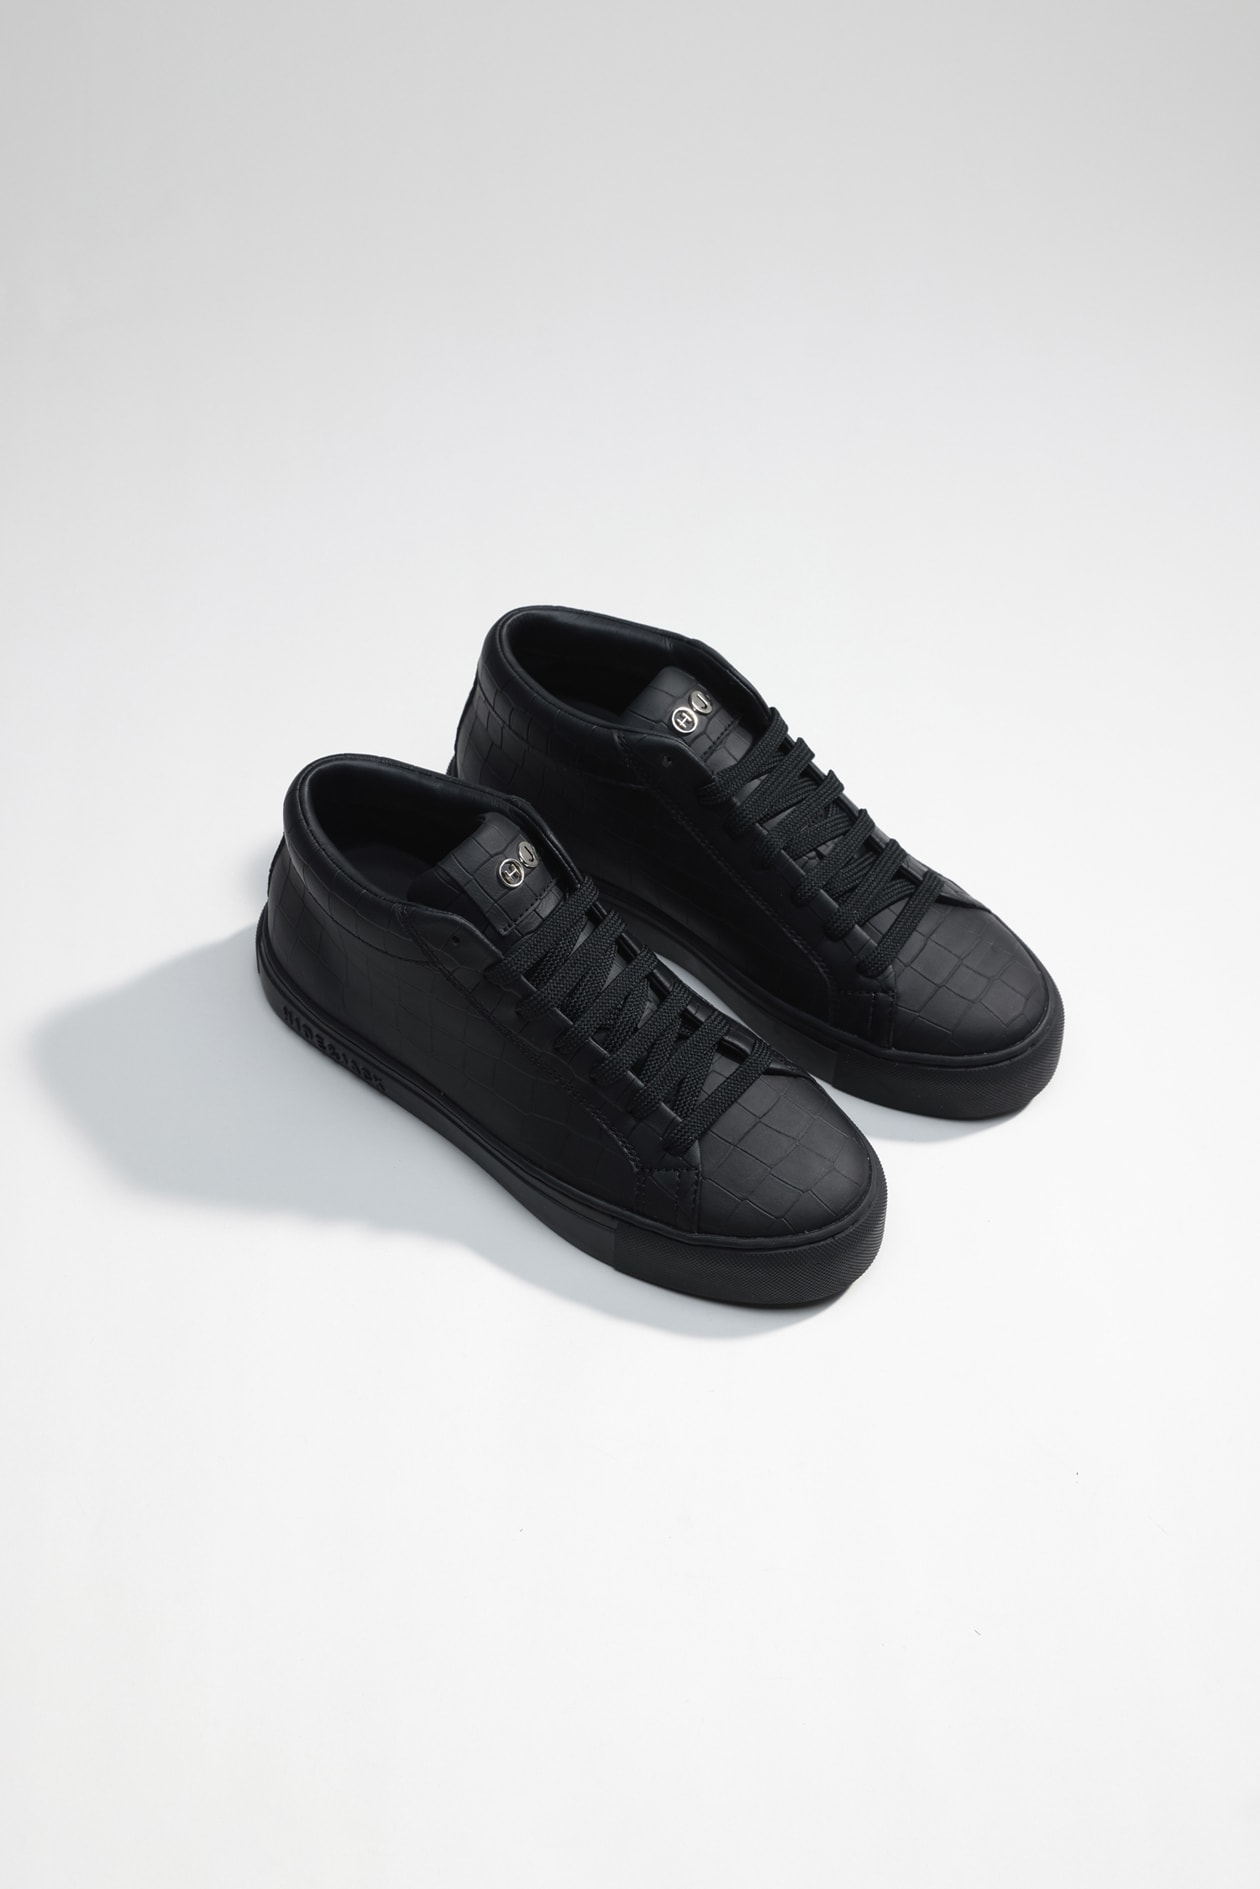 Hide & Jack High Top Sneaker - Essence Black Black